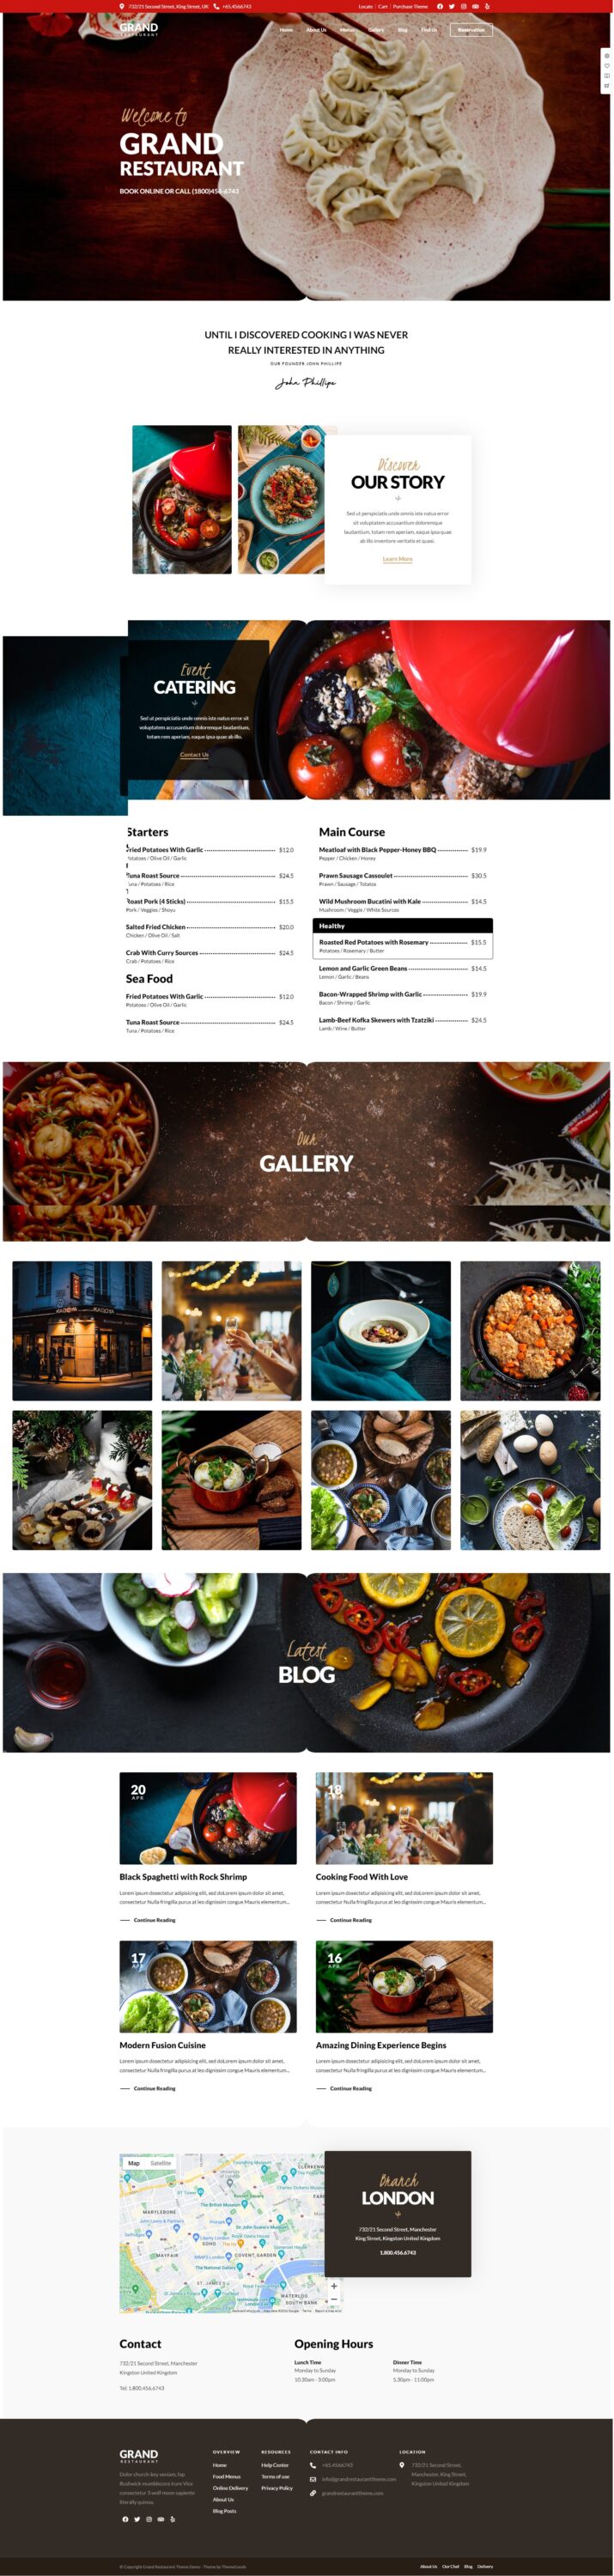 Mẫu website dịch vụ nhà hàng - Grand Restaurant